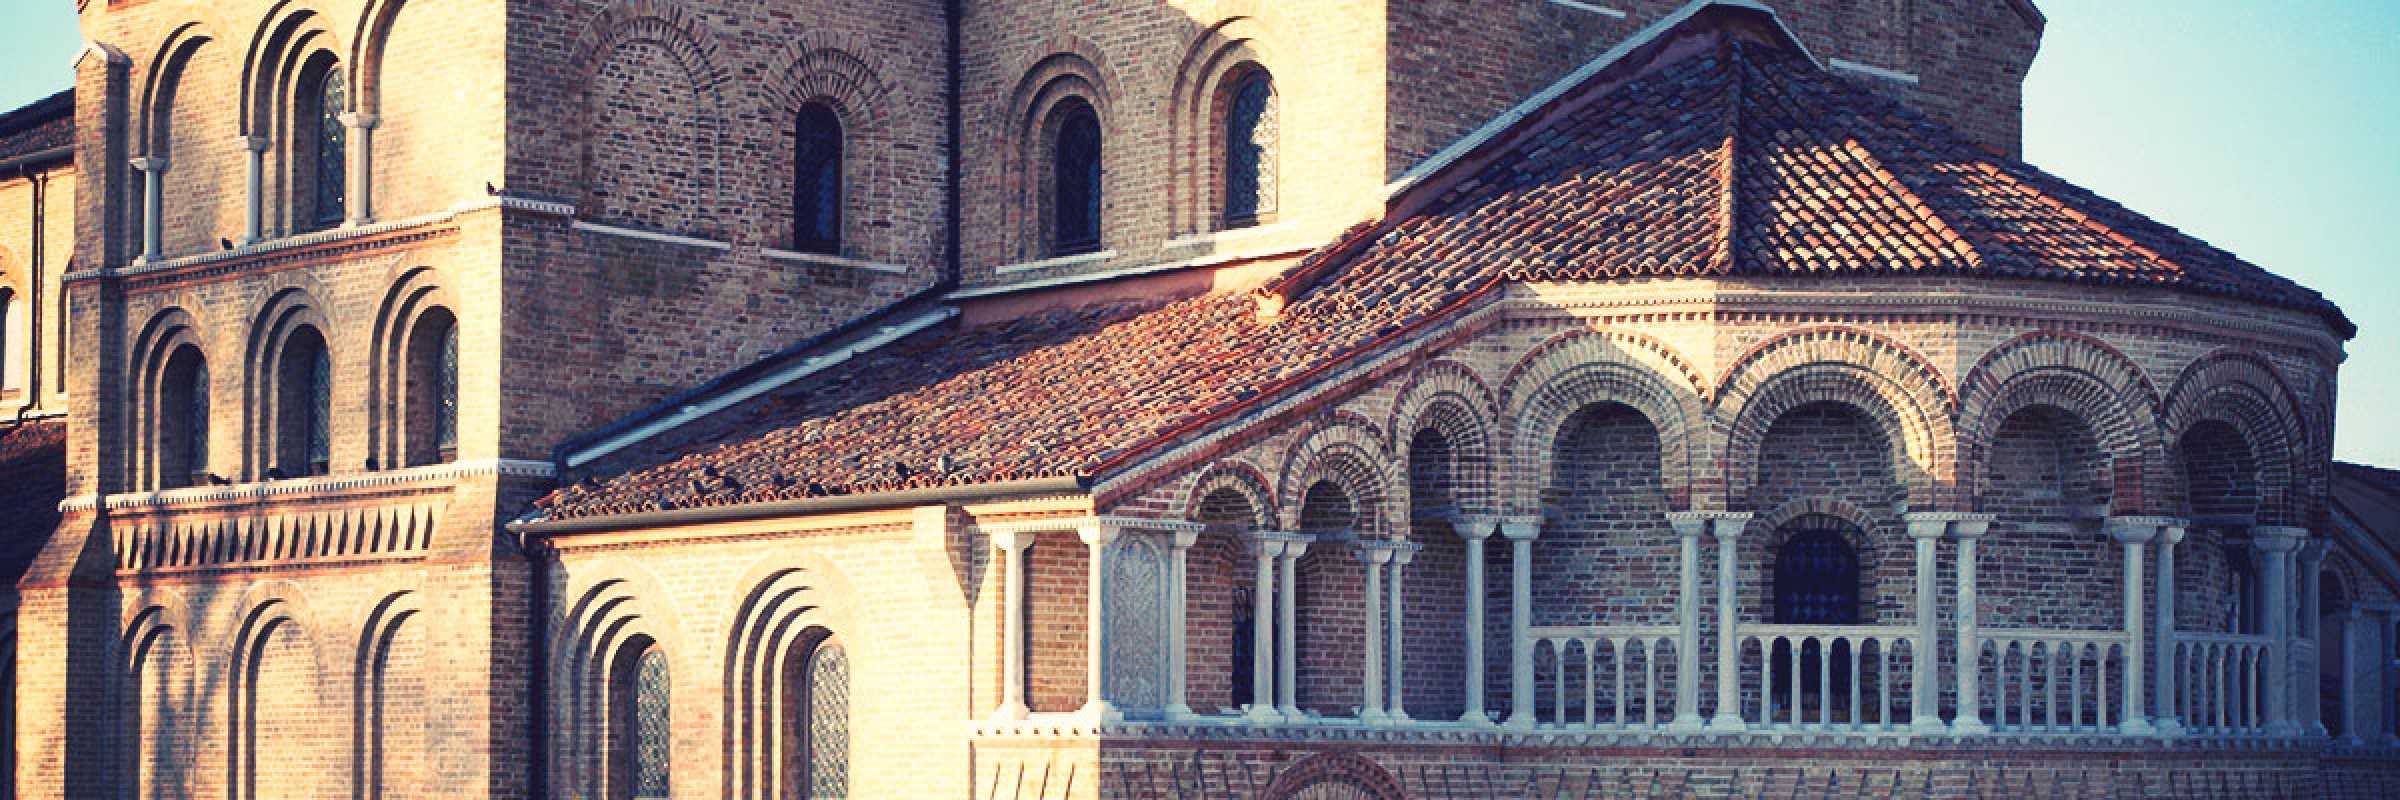 Particolare della Basilica dei Santi Maria e Donato a Murano. — (Archivio Bazzmann/Venipedia)